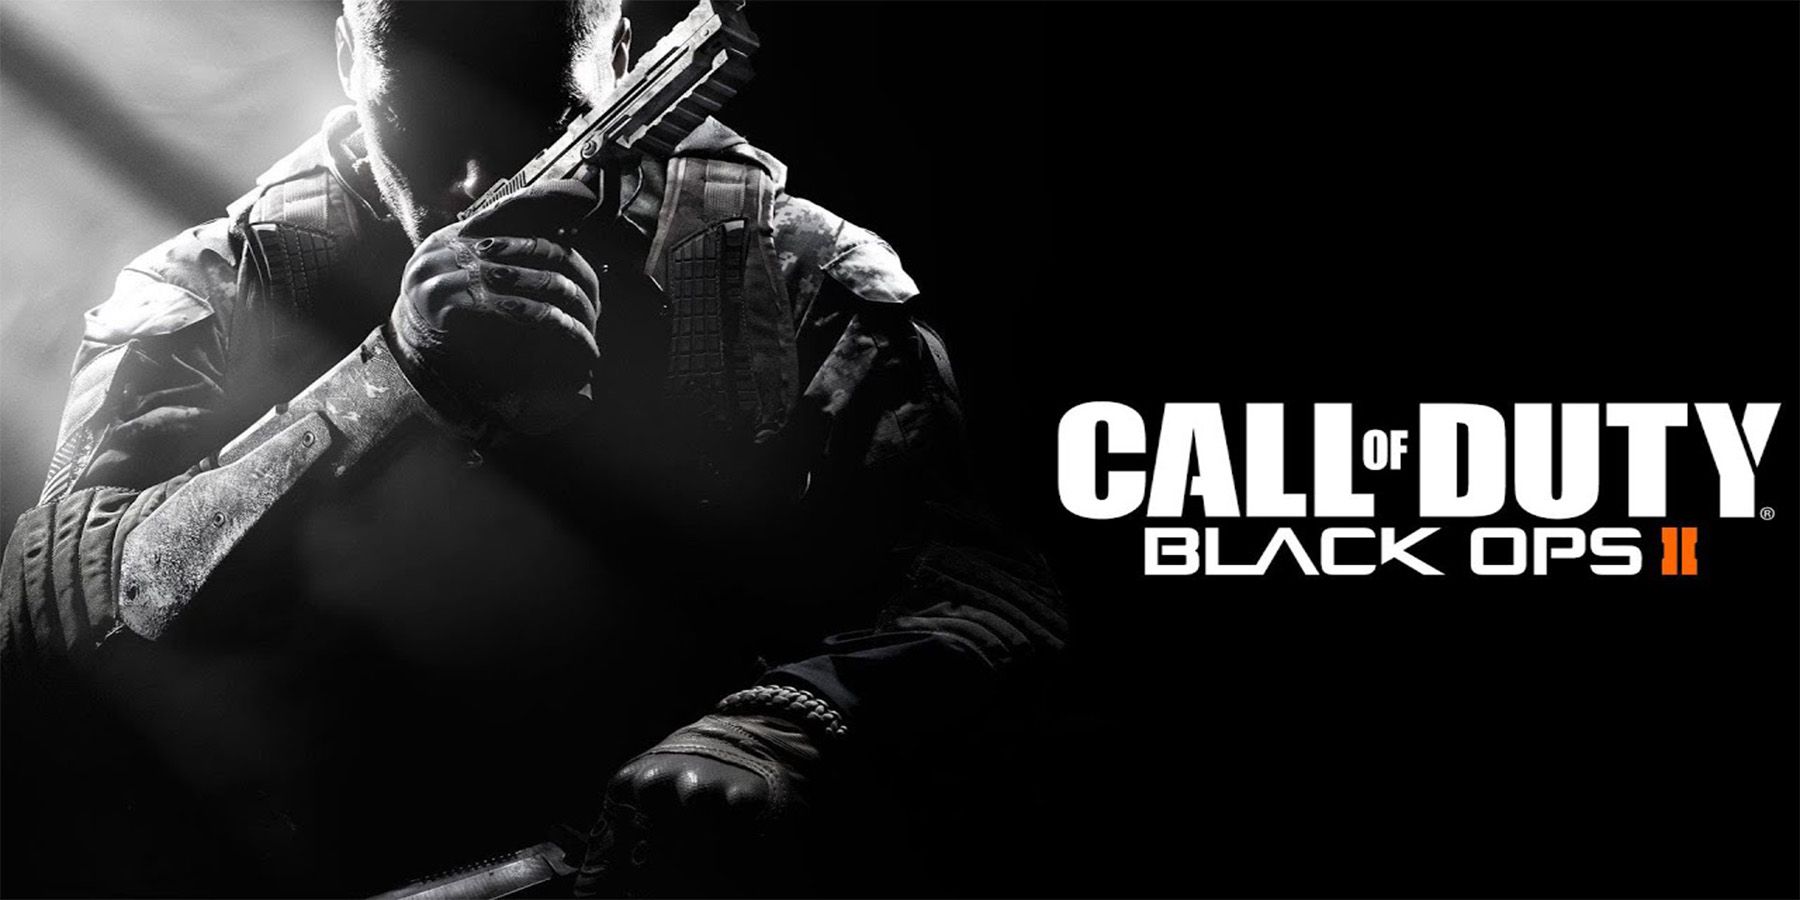 Распродажа обратной совместимости Xbox позволяет игрокам получить классические игры Call of Duty по дешевке